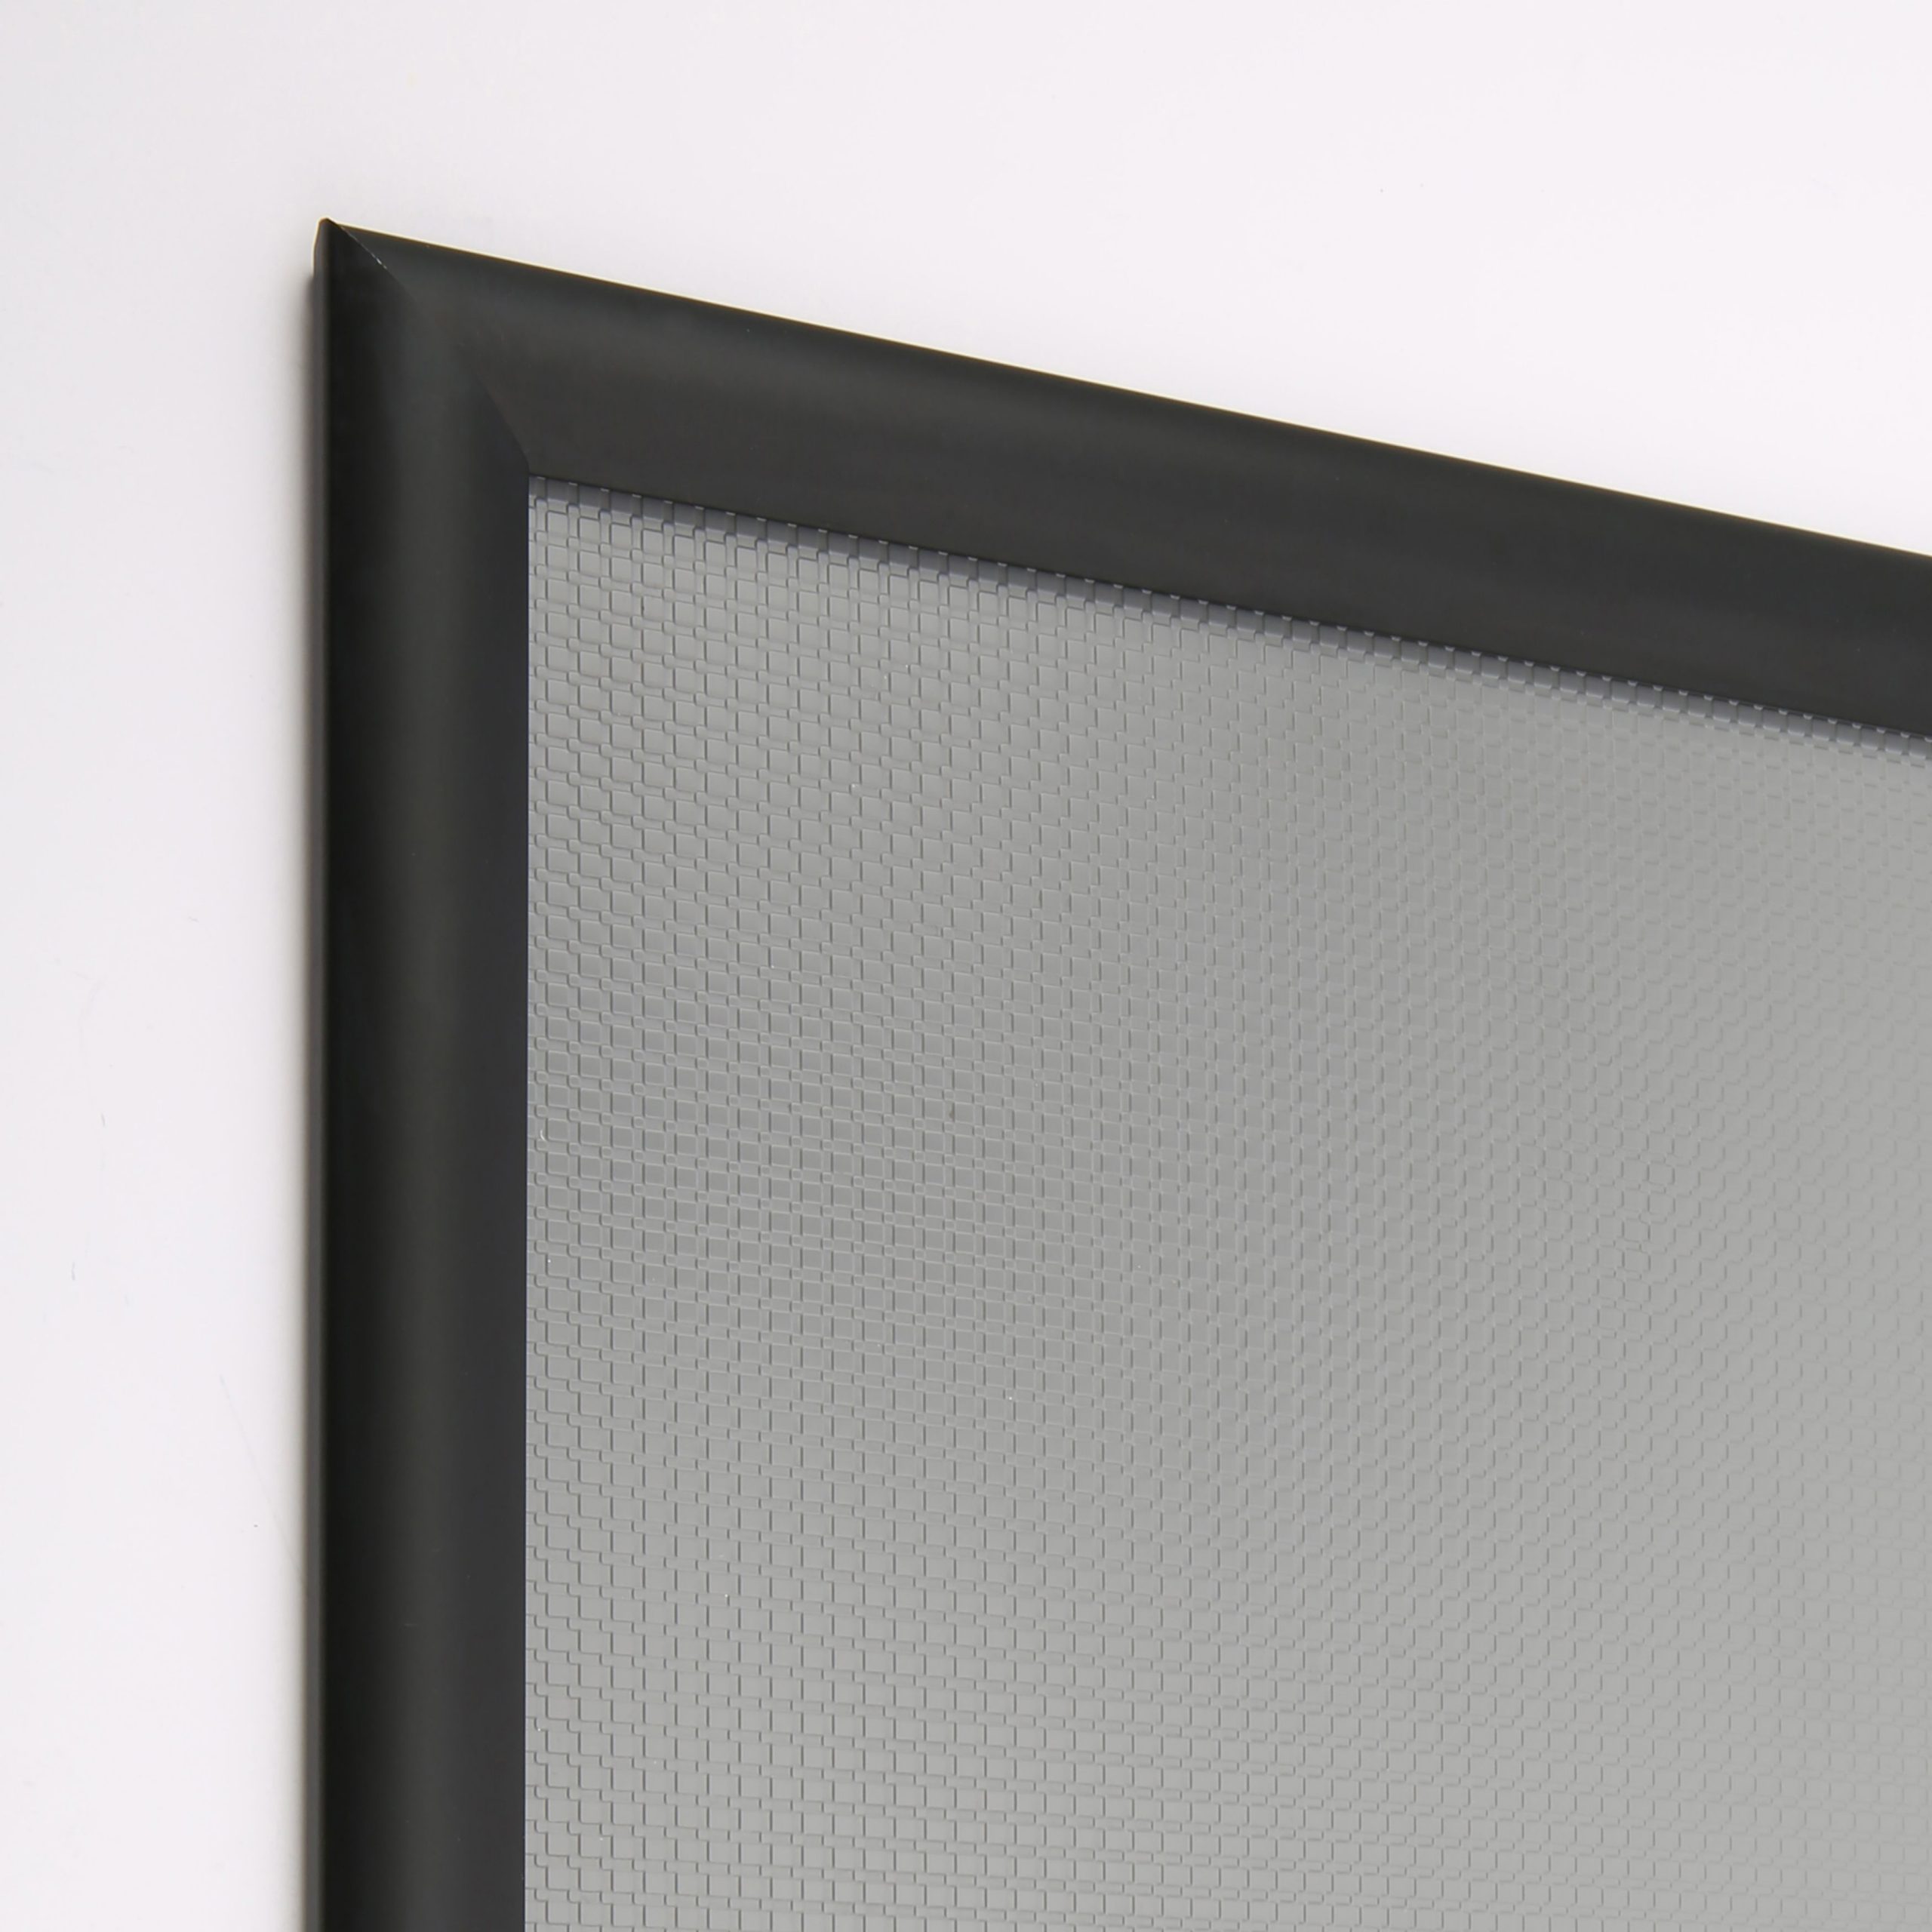 24×36 Snap Poster Frame – 1 inch Black Profile, Mitered Corner ...